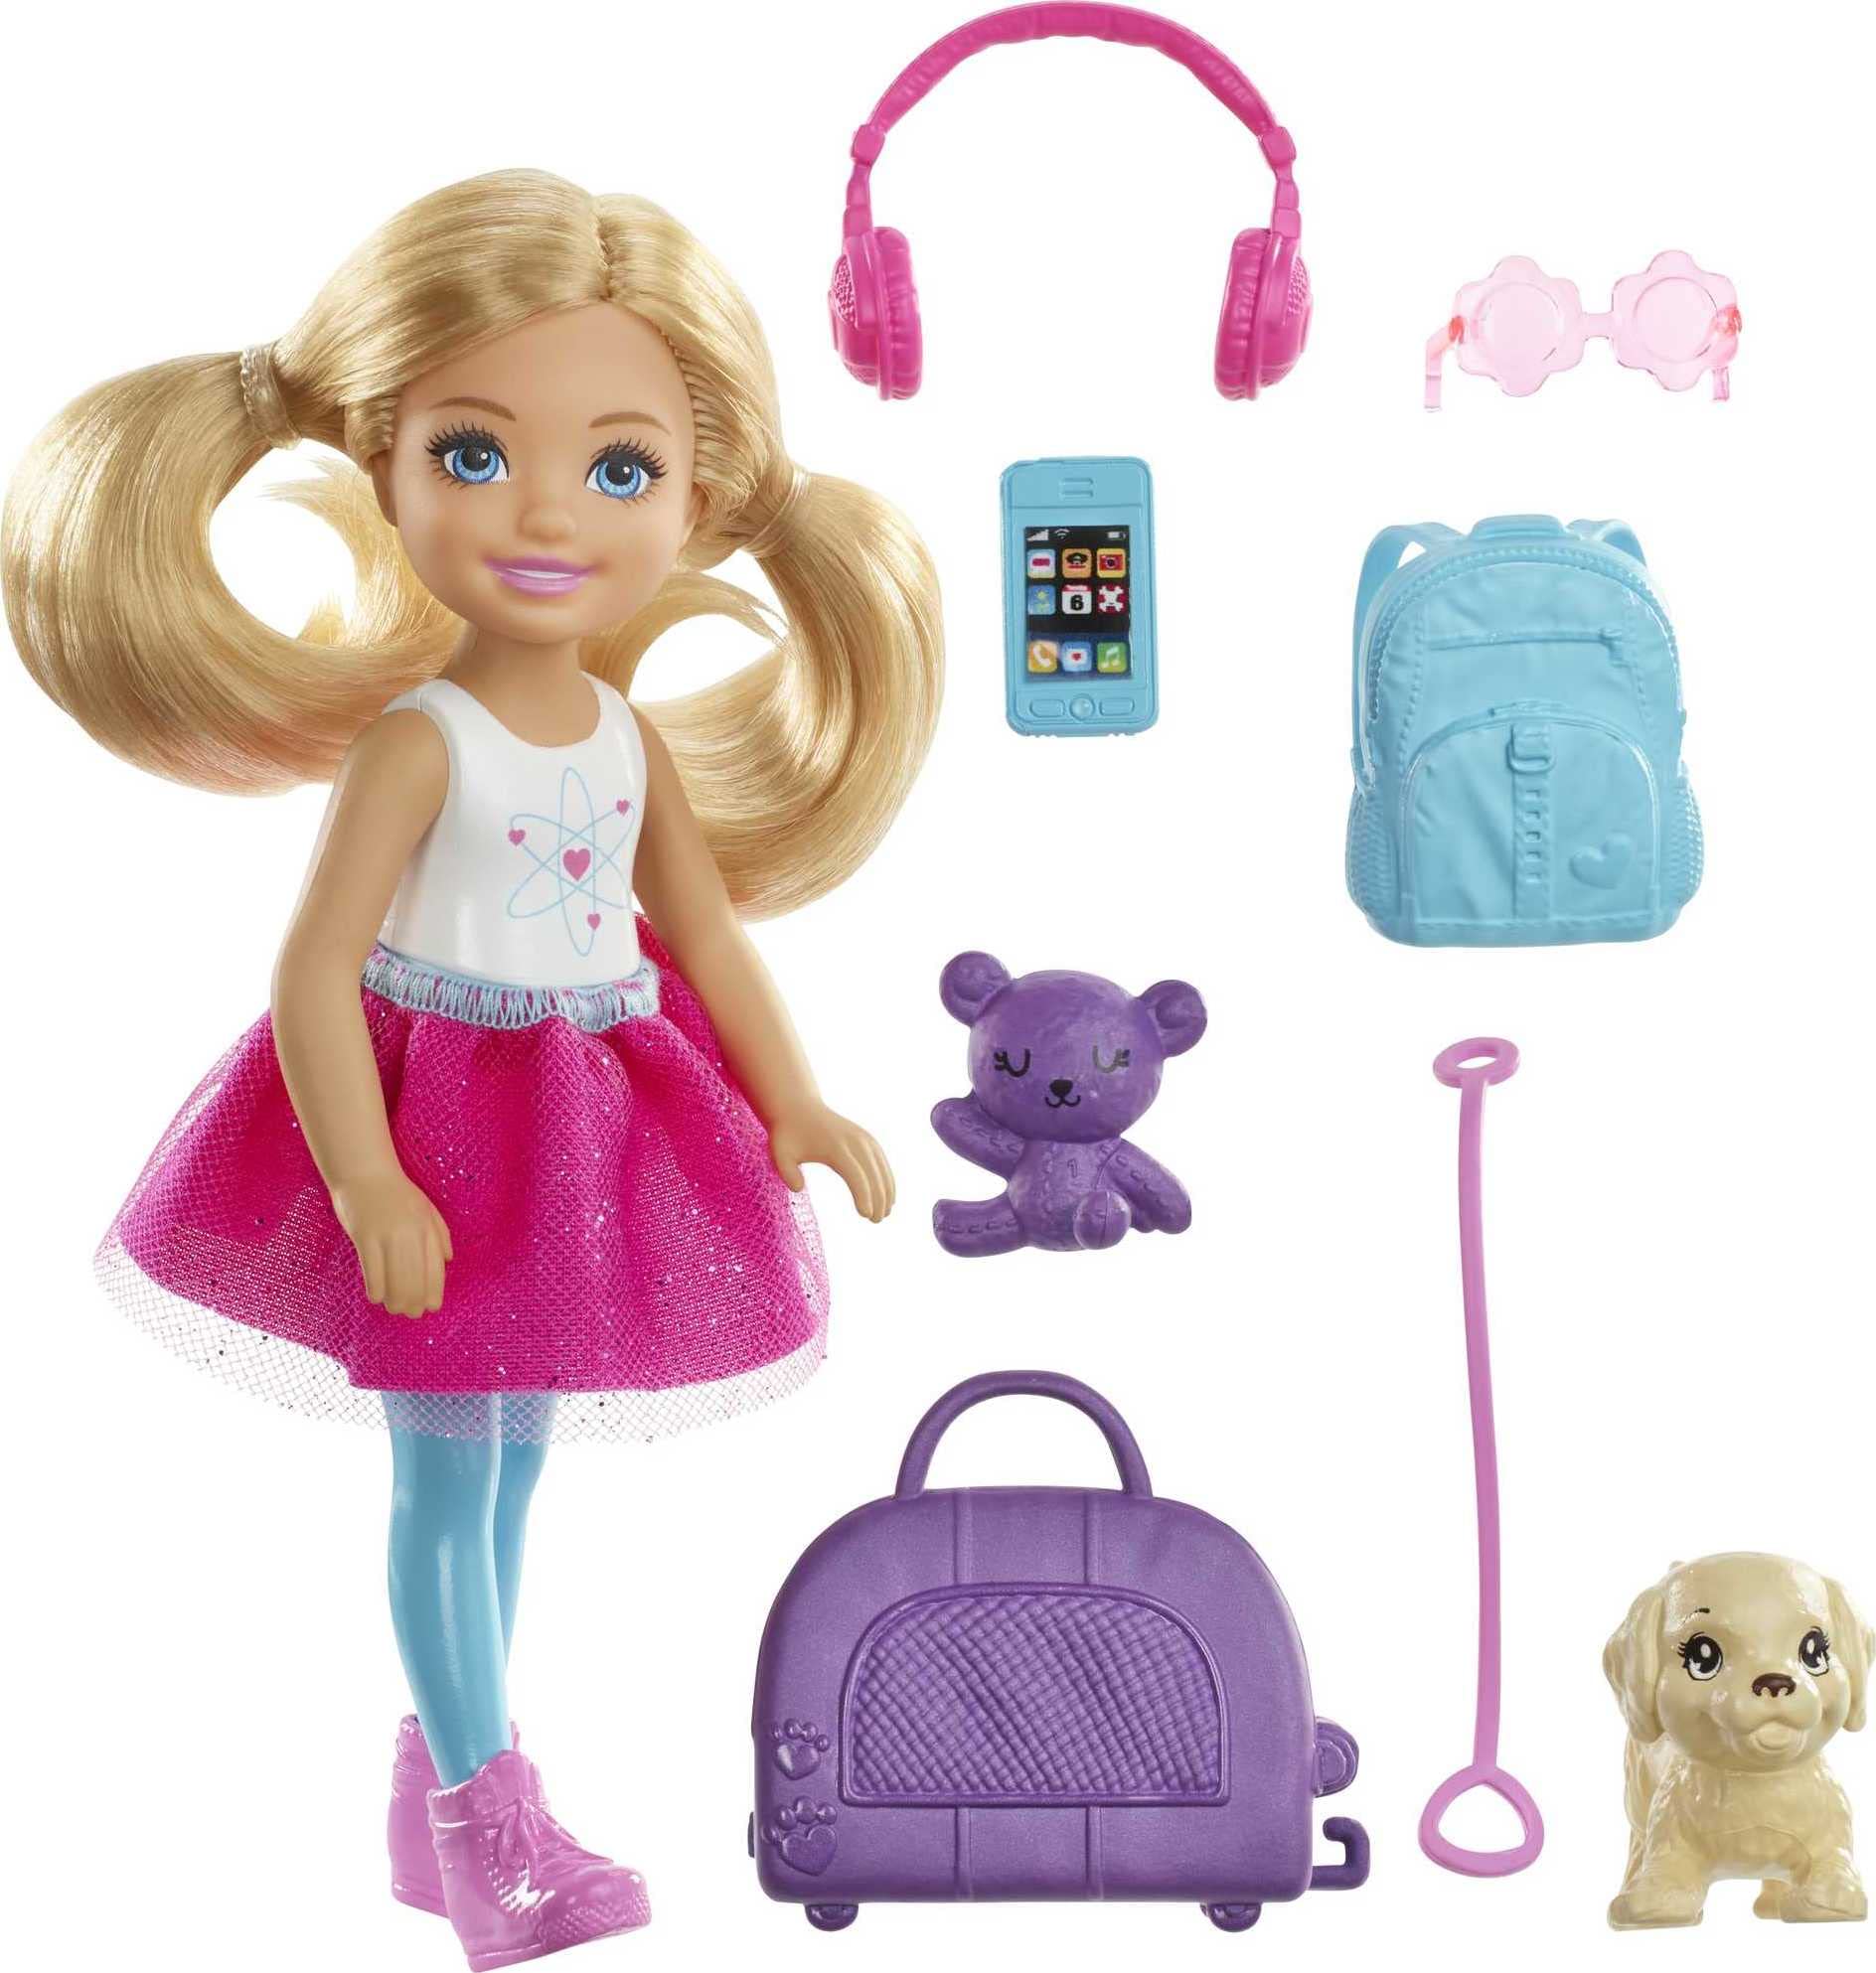 Populaire Barbie Voyage Mini-poupée ​Chelsea Blonde, av